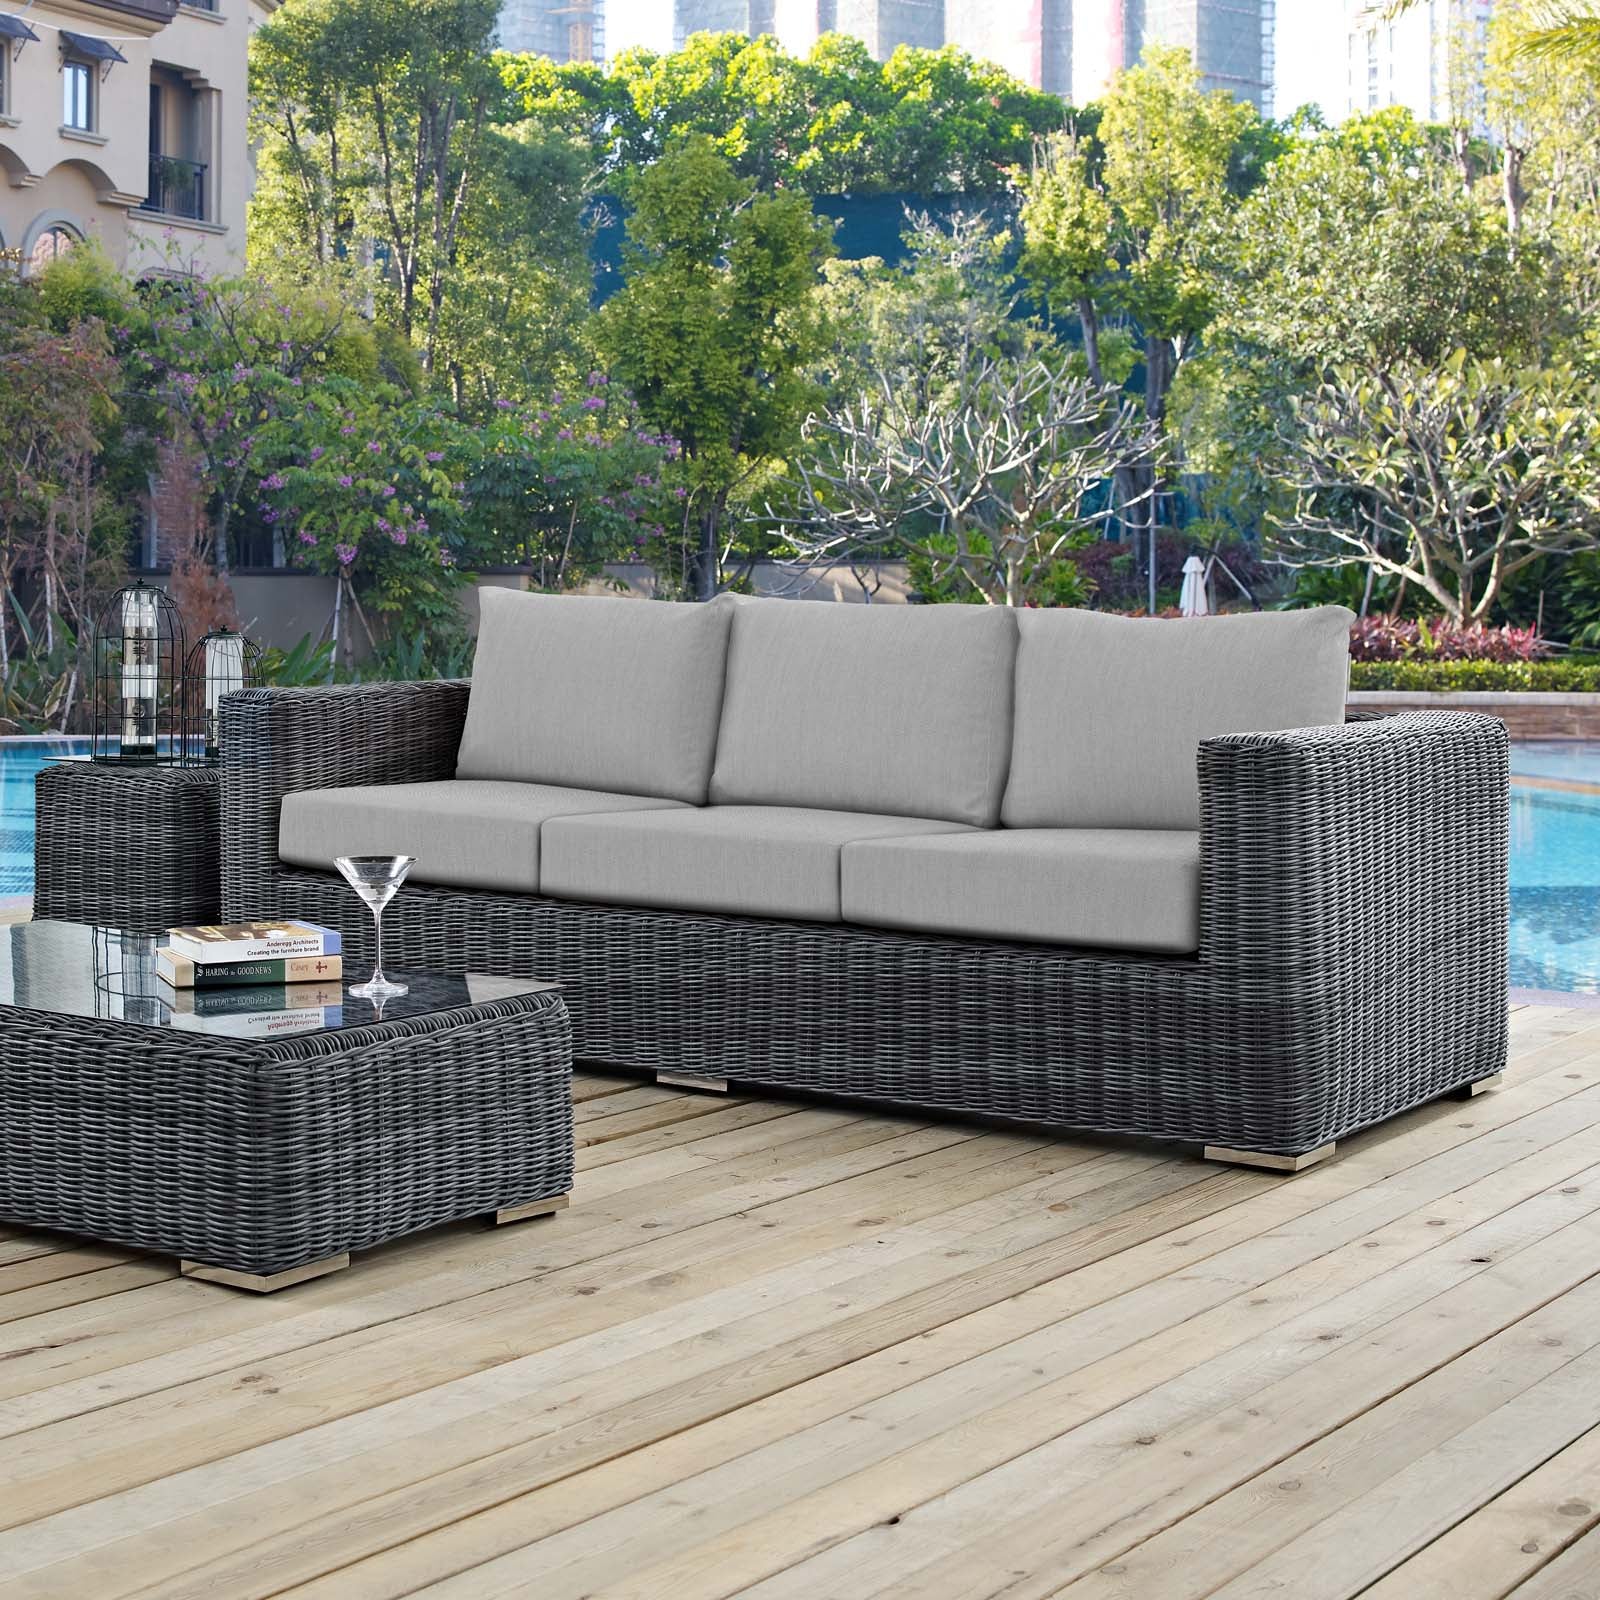 Modway Outdoor Sofas - Summon Outdoor Patio Sunbrella Sofa Canvas Gray